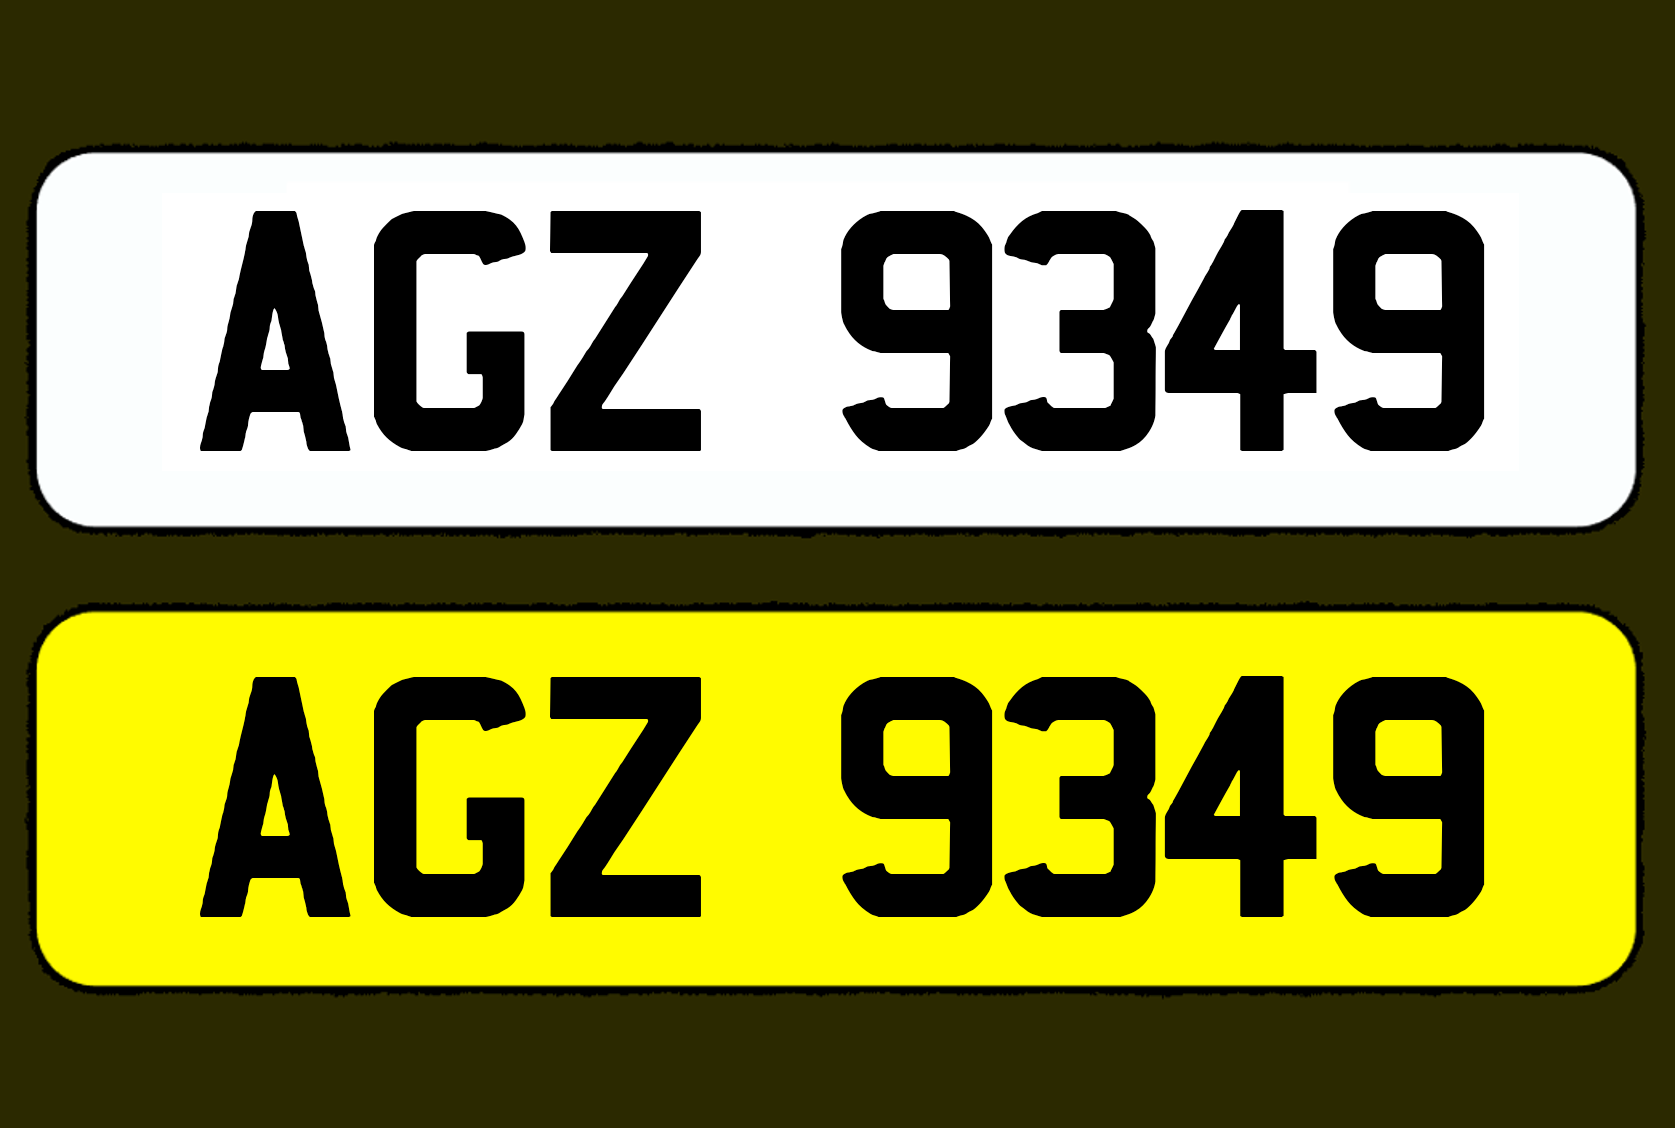 AGZ 9349